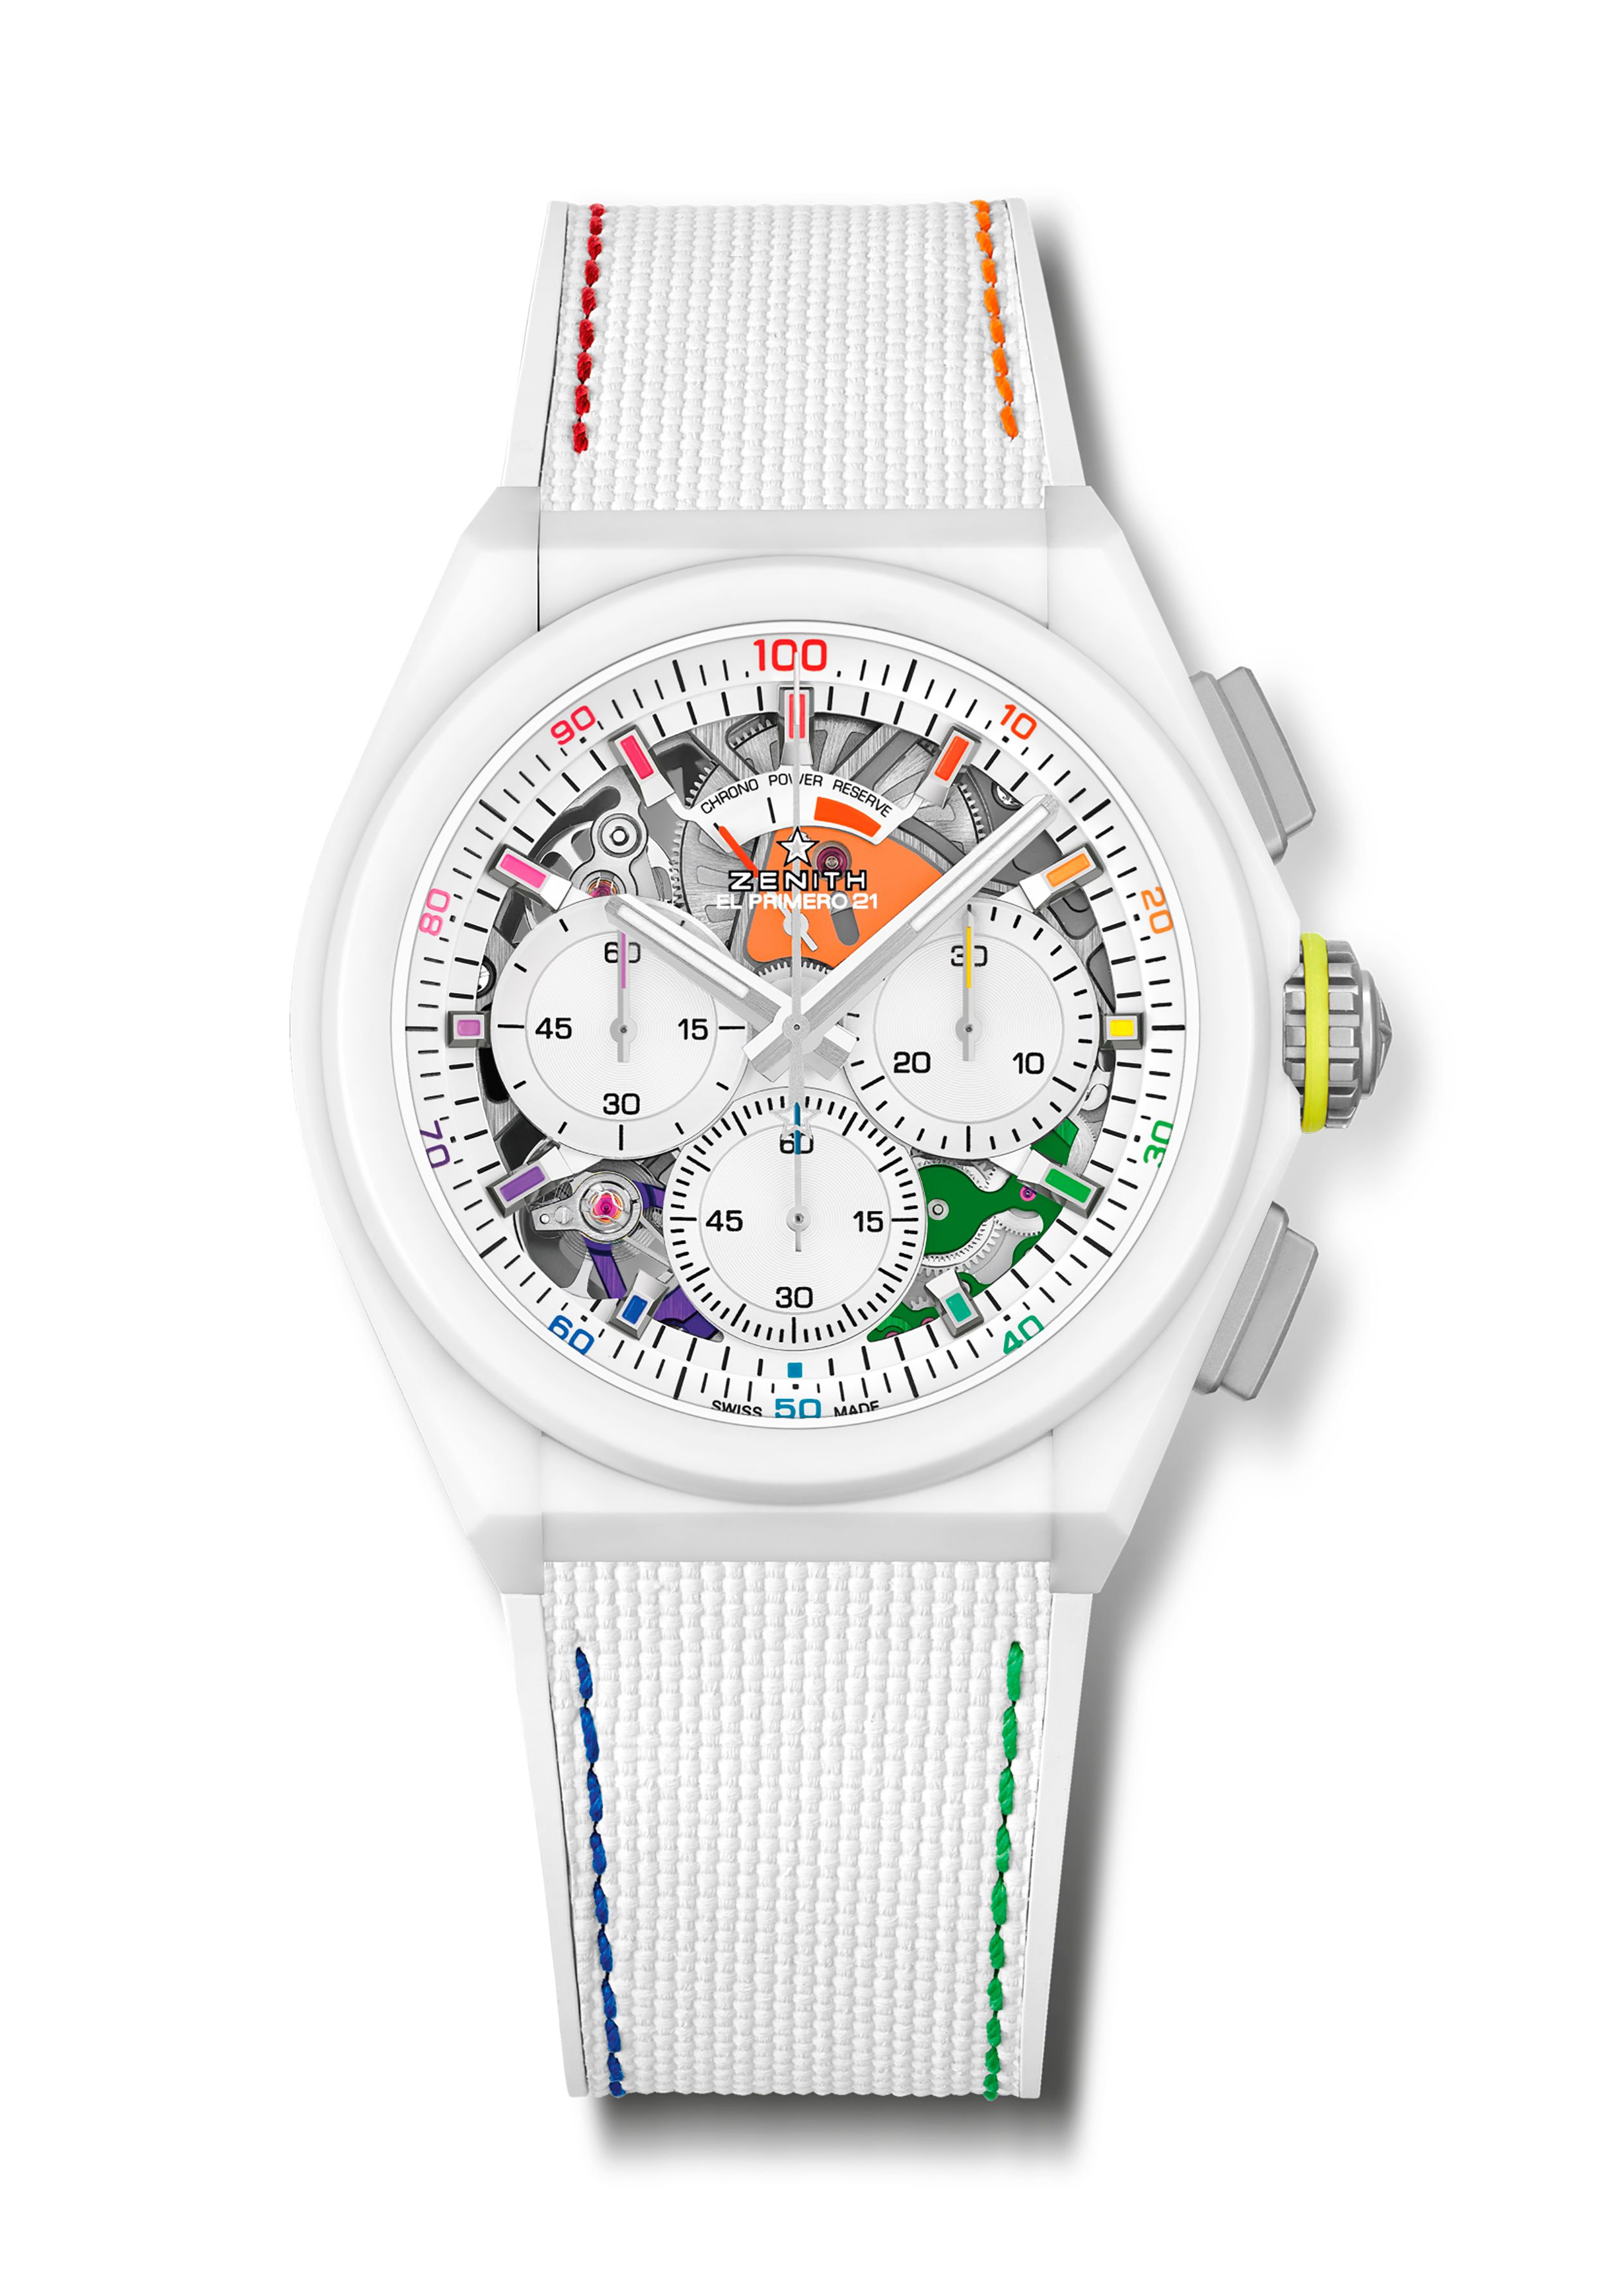 Relojes blancos: nuestros cinco modelos favoritos